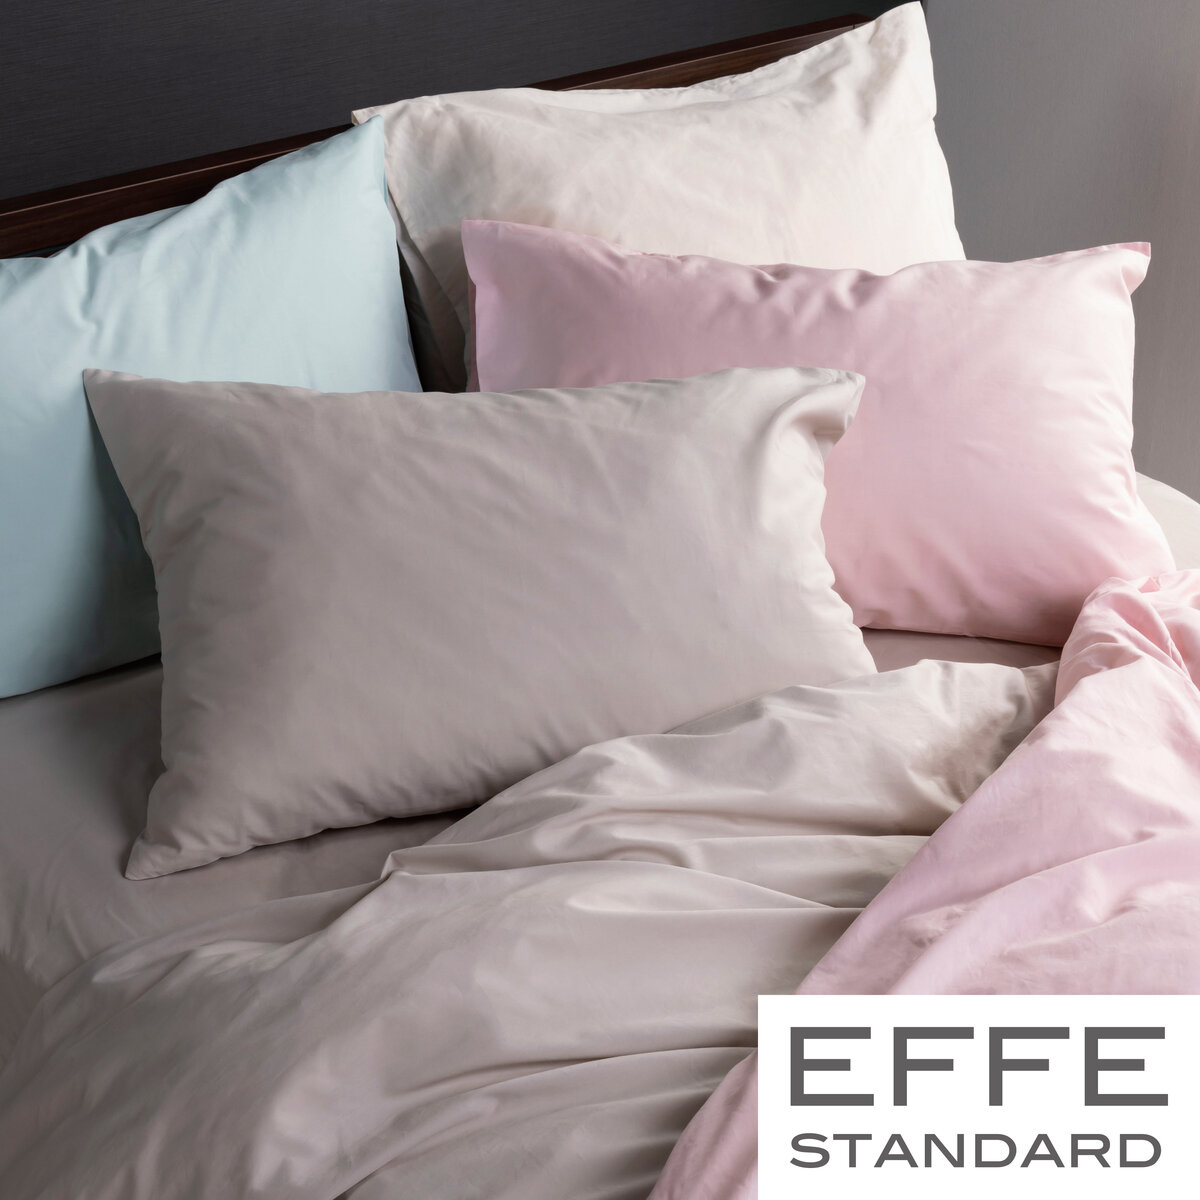 フランスベッド 寝装品 3点セット エッフェスタンダード シングル ブルー